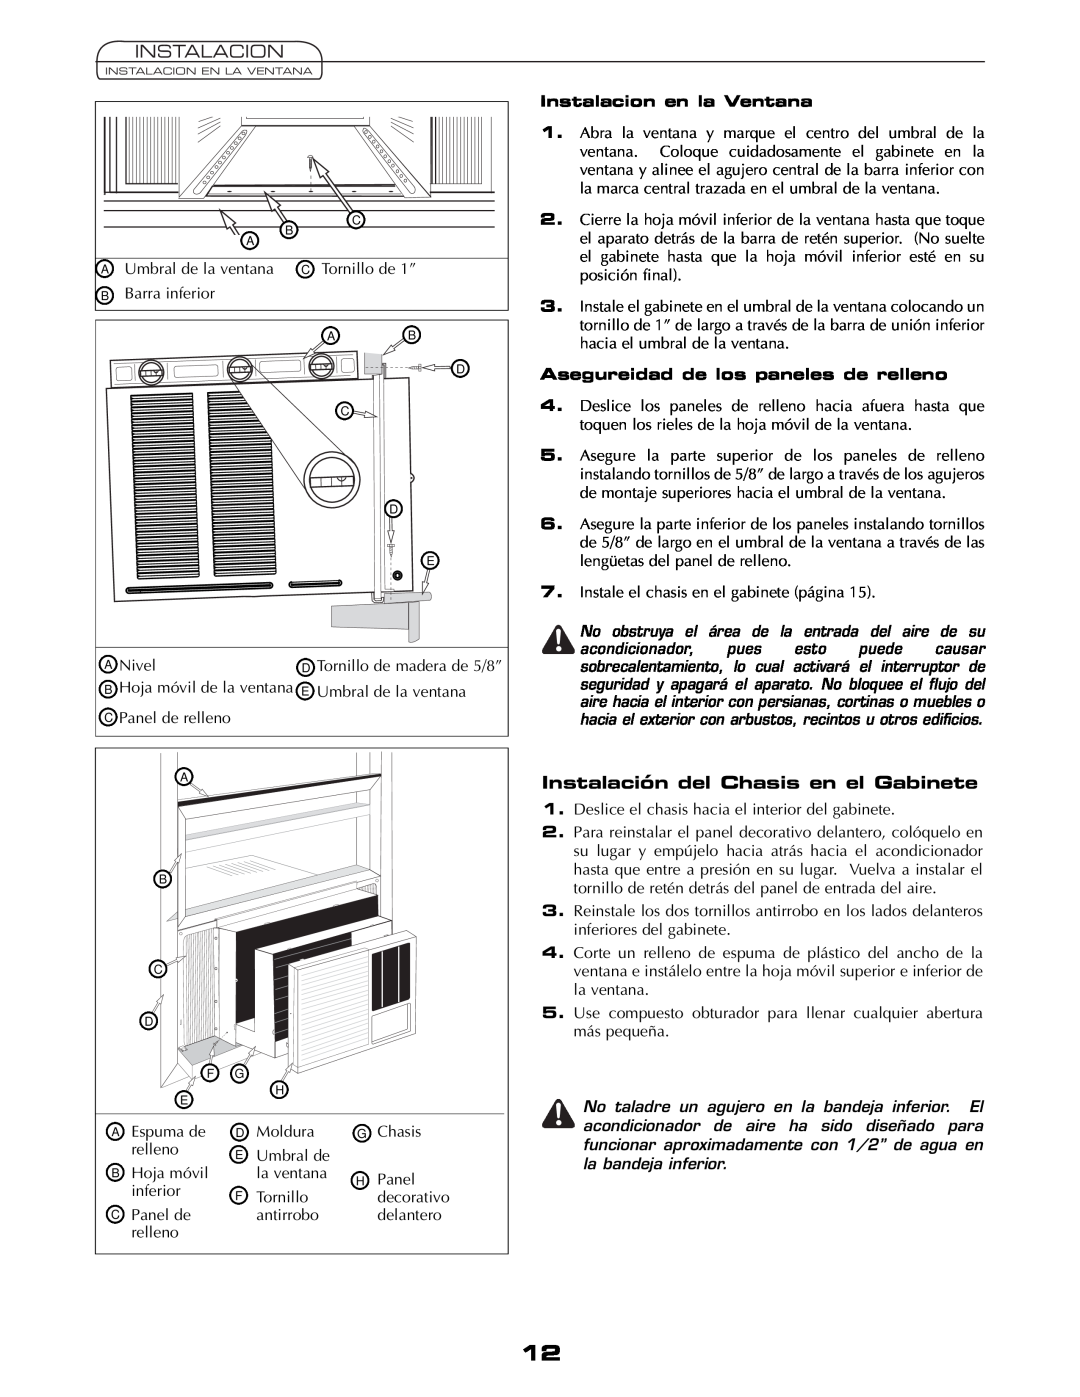 Fedders AEY08F2B important safety instructions Instalación del Chasis en el Gabinete, Instalacion en la Ventana 